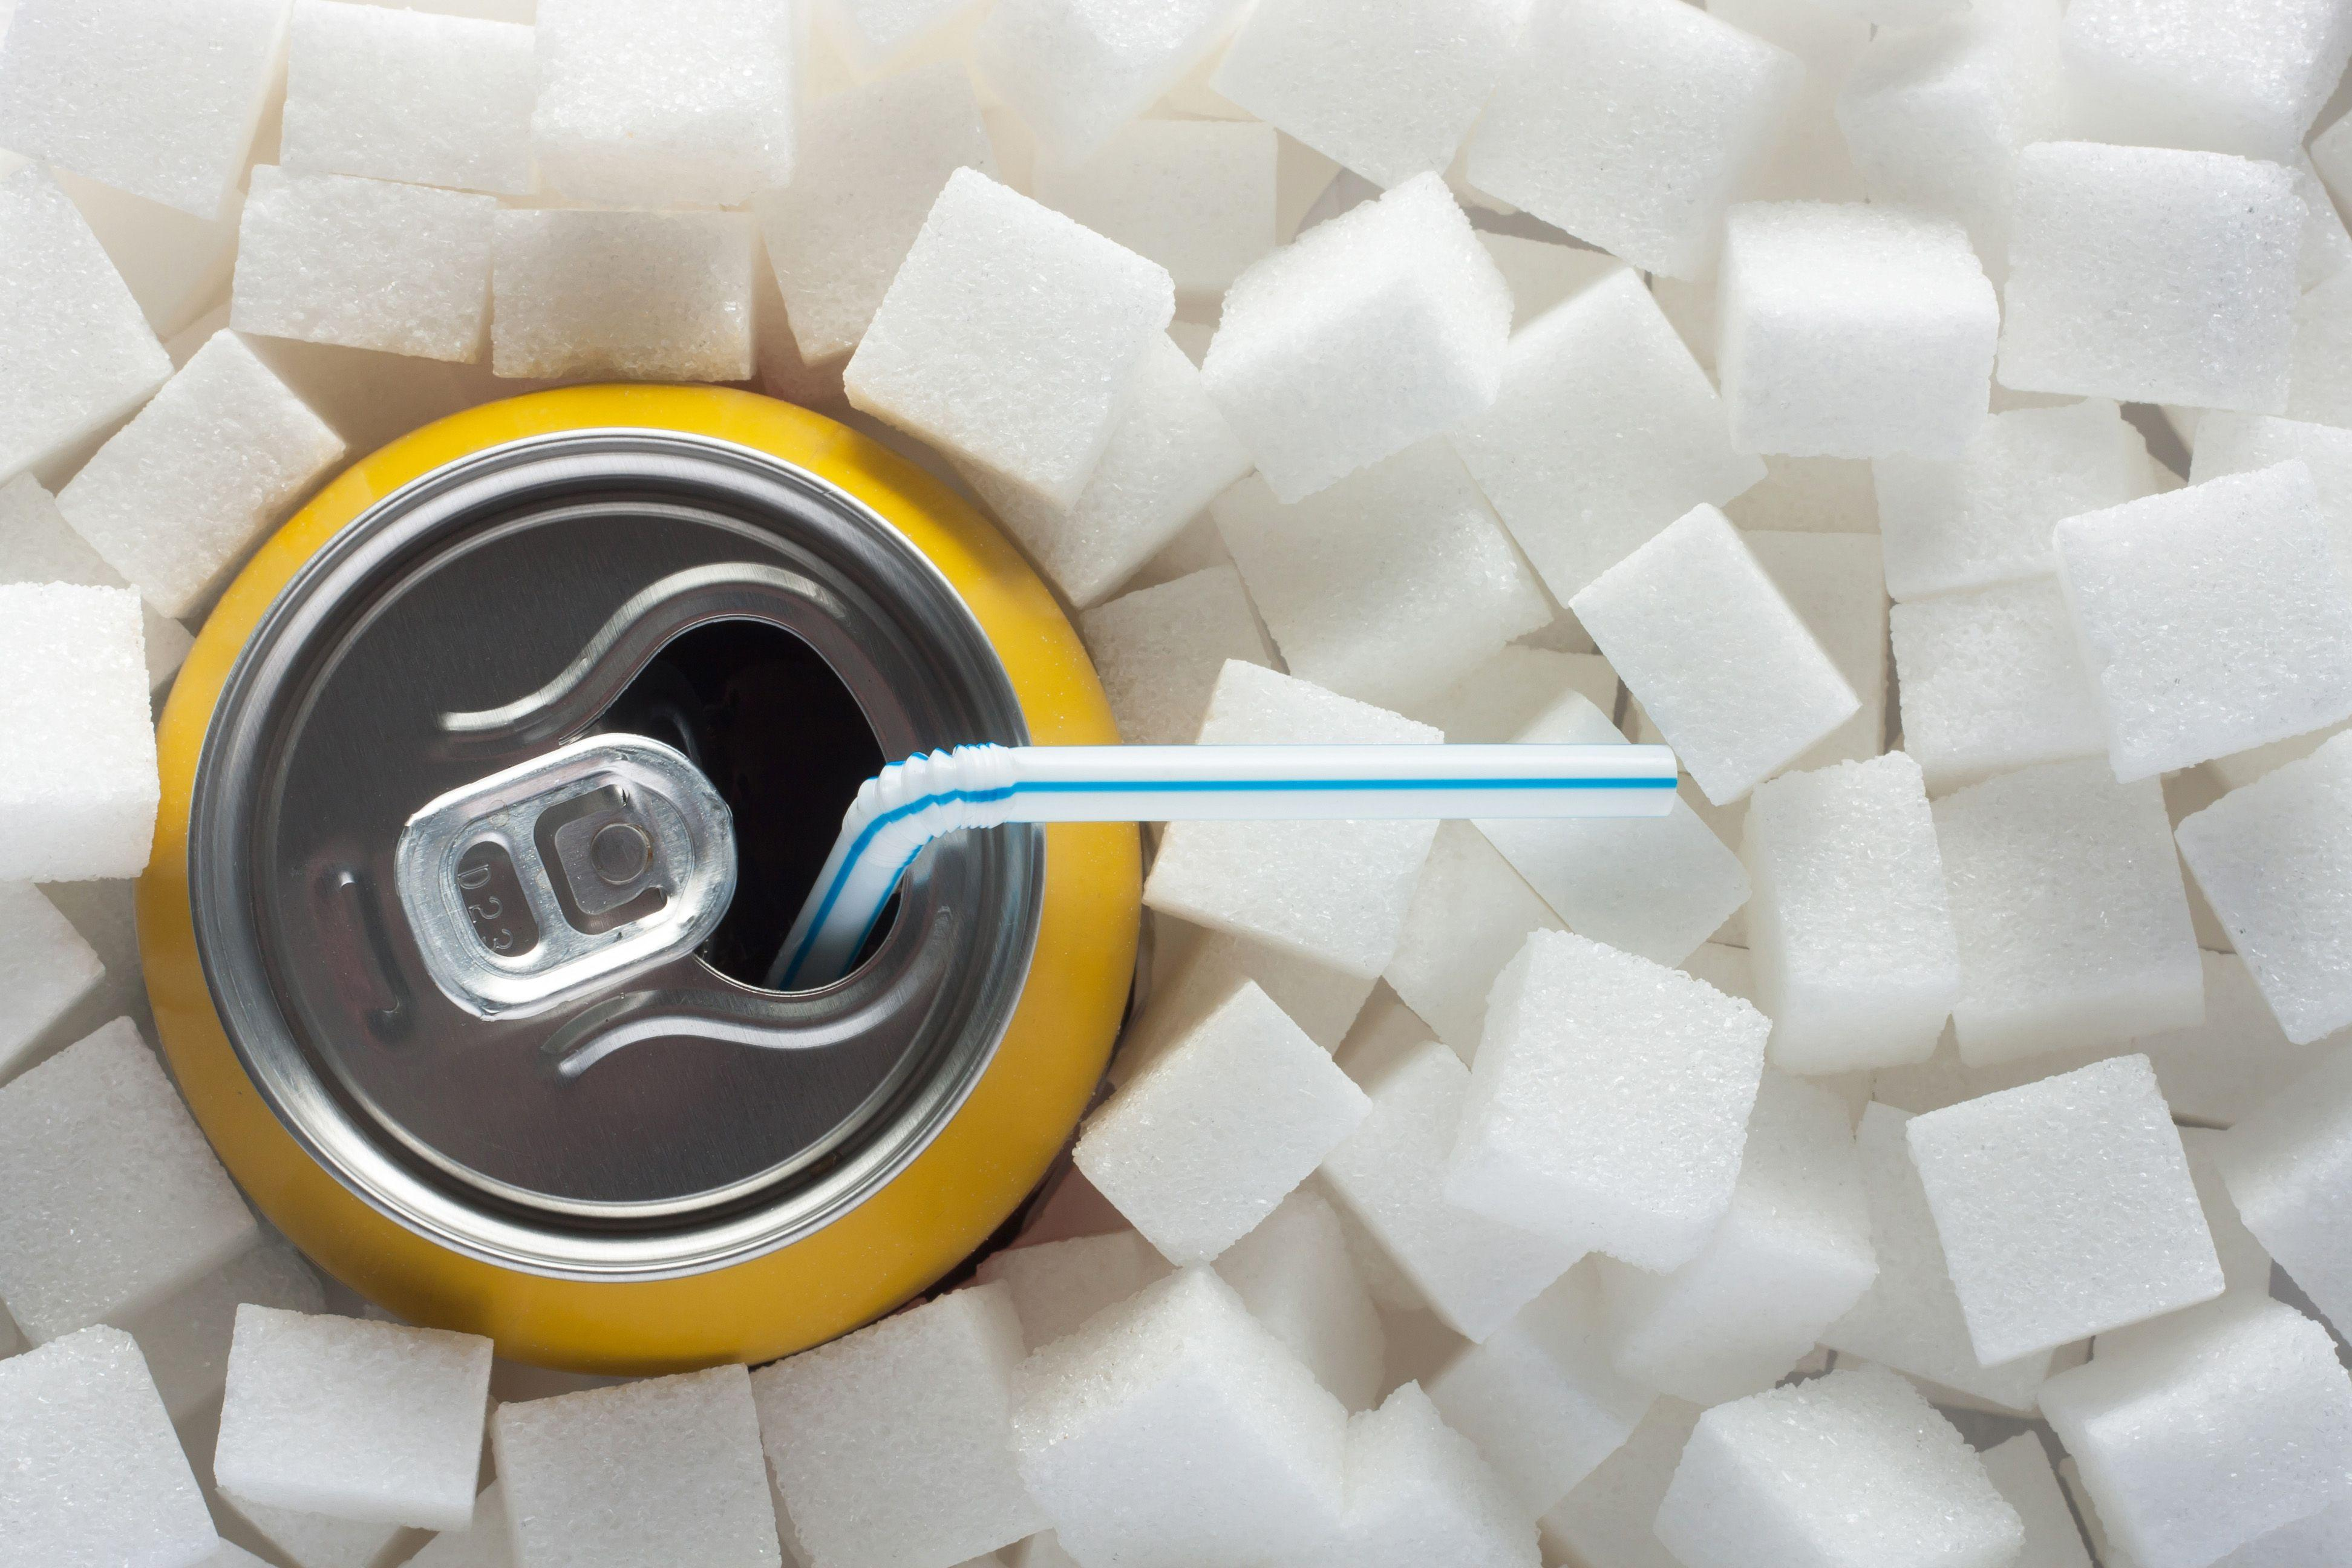 Ще одна країна ввела податок на цукор у безалкогольних напоях, аби боротися з ожирінням у дітей